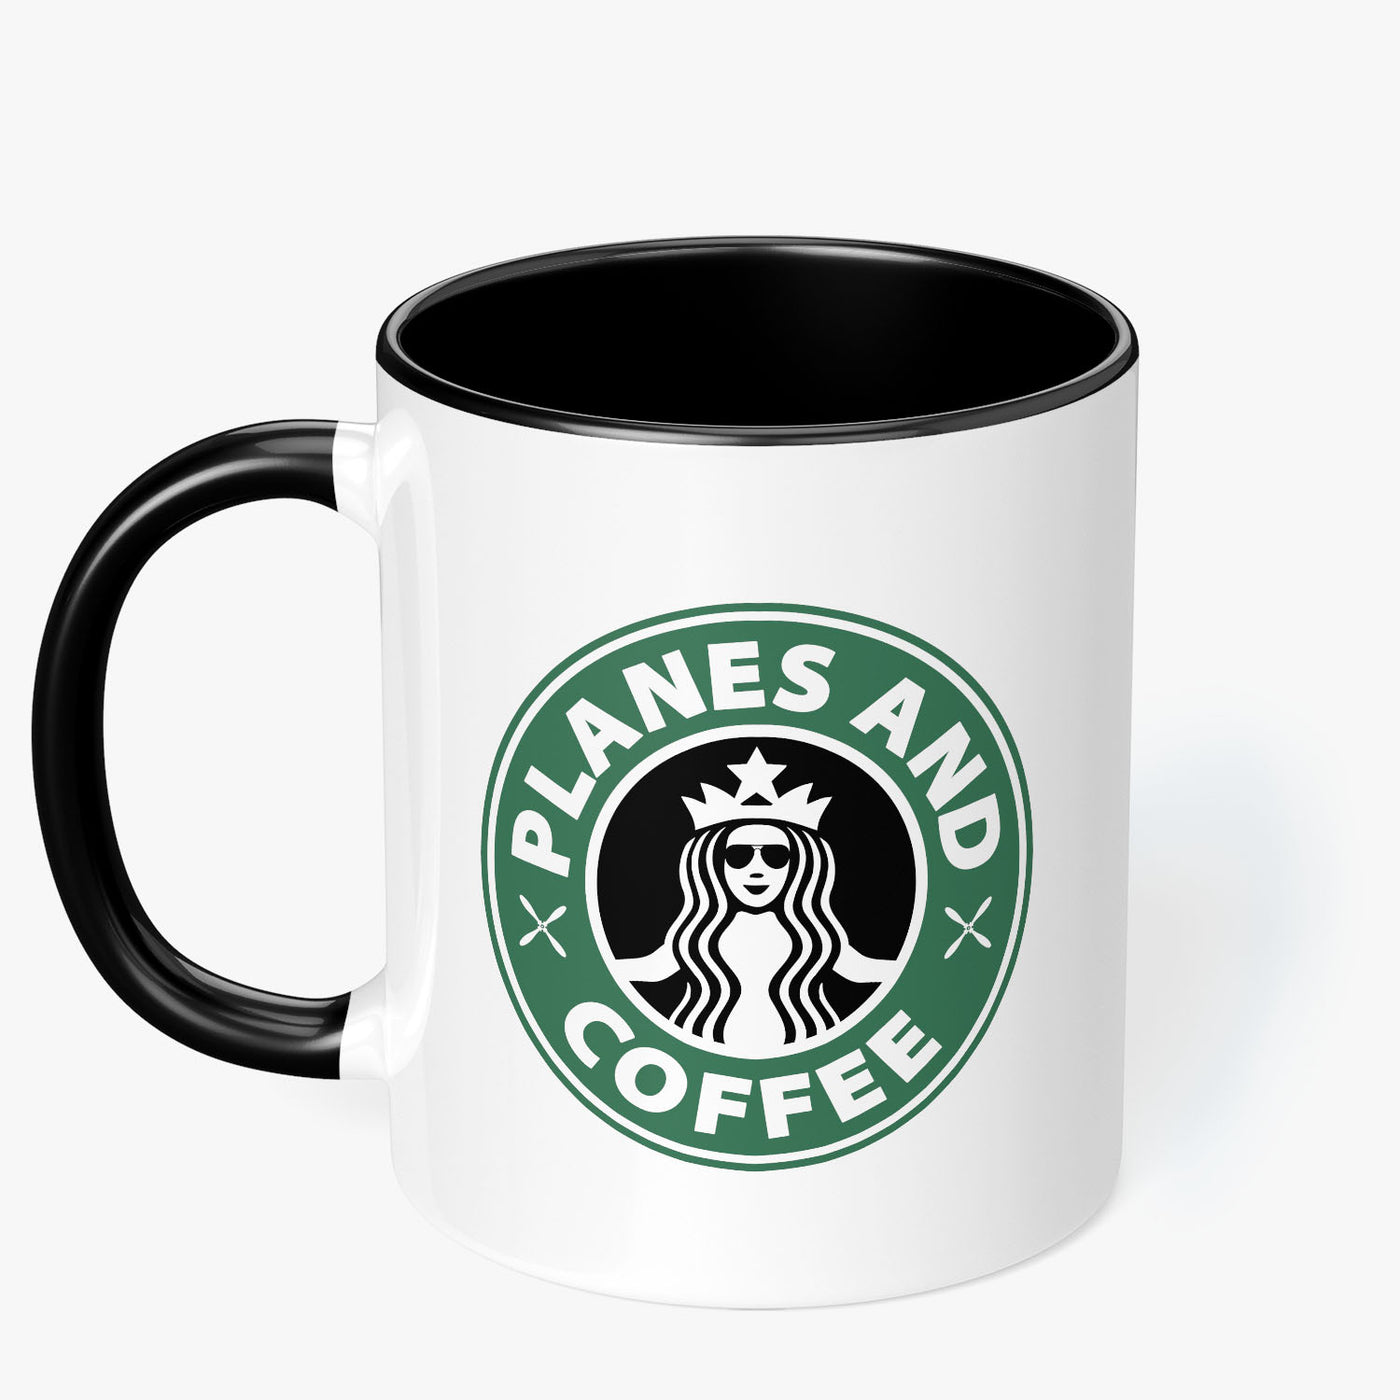 Planes and Coffee Mug